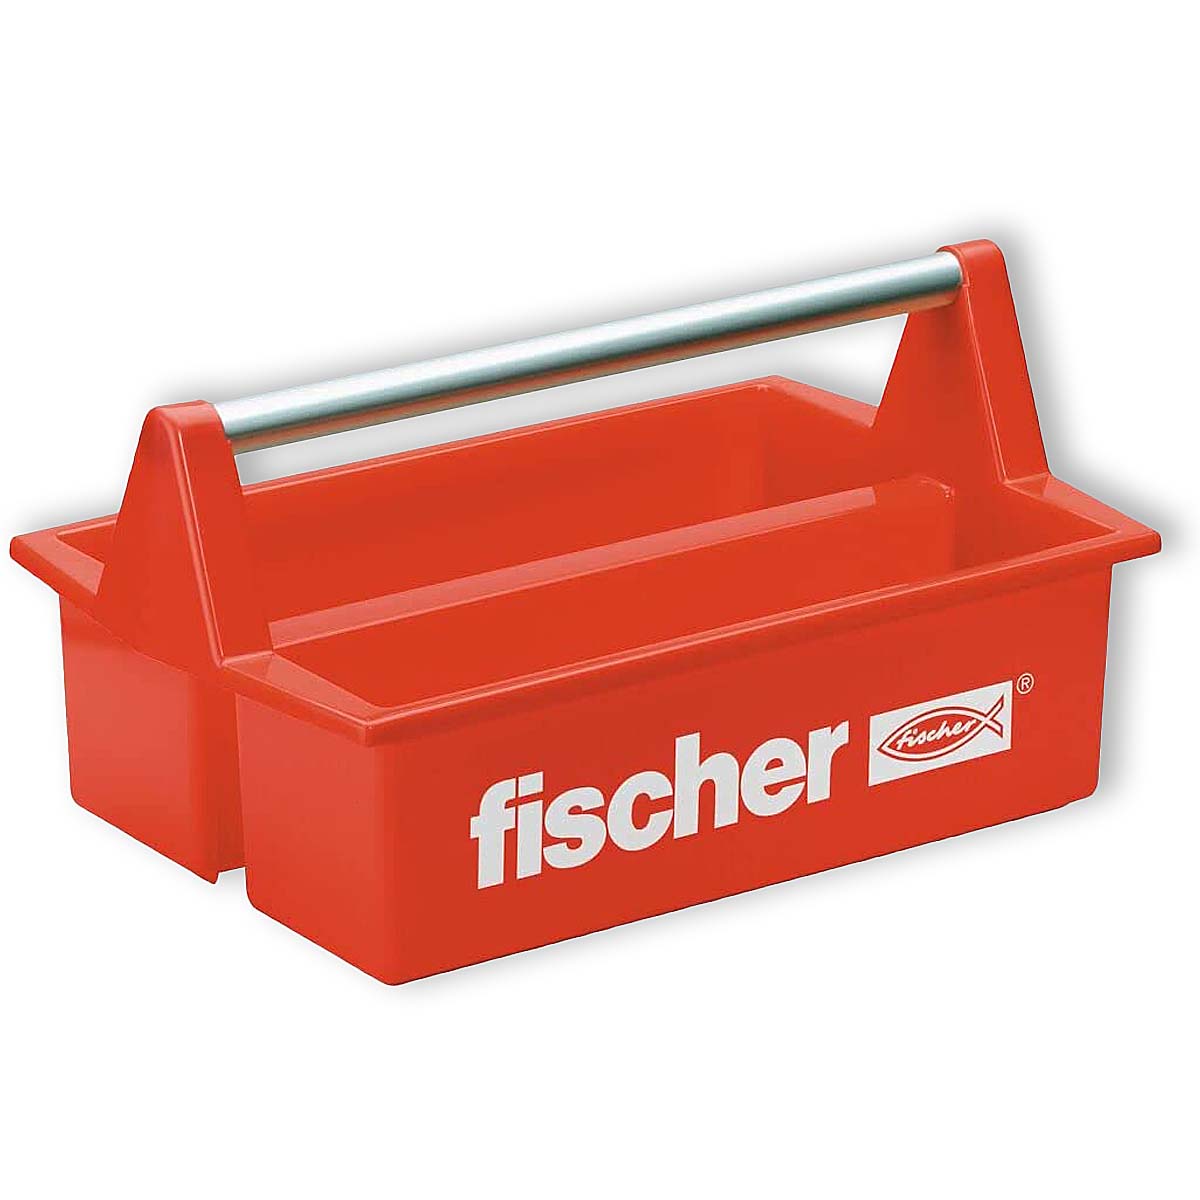 Fischer WZK Werkzeugkoffer, 1 Stk.